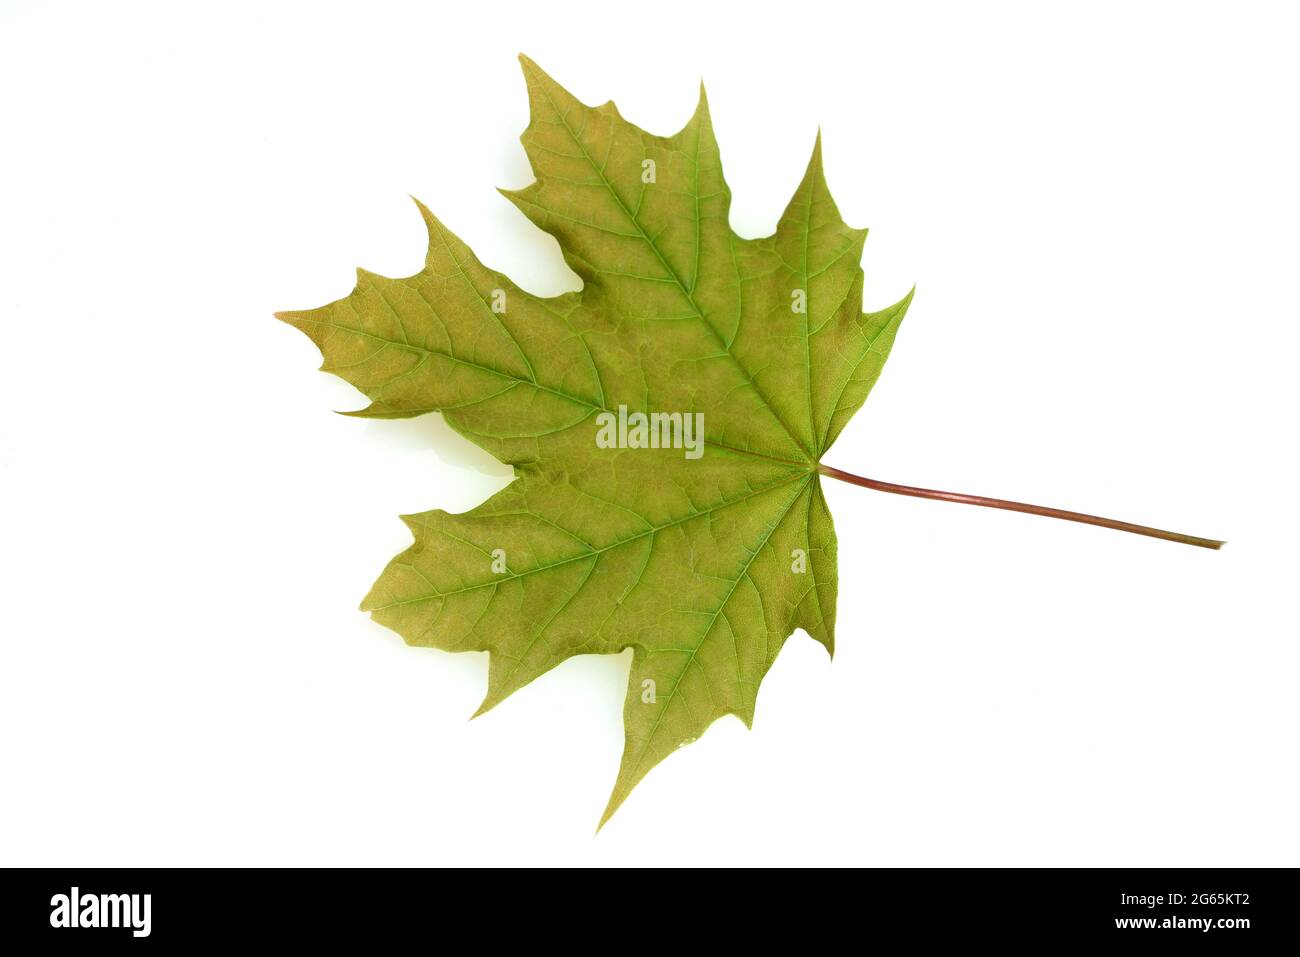 Ahorn, Acer, ist eine heimische Baumart. Maple, Acer, is a native tree species. Stock Photo